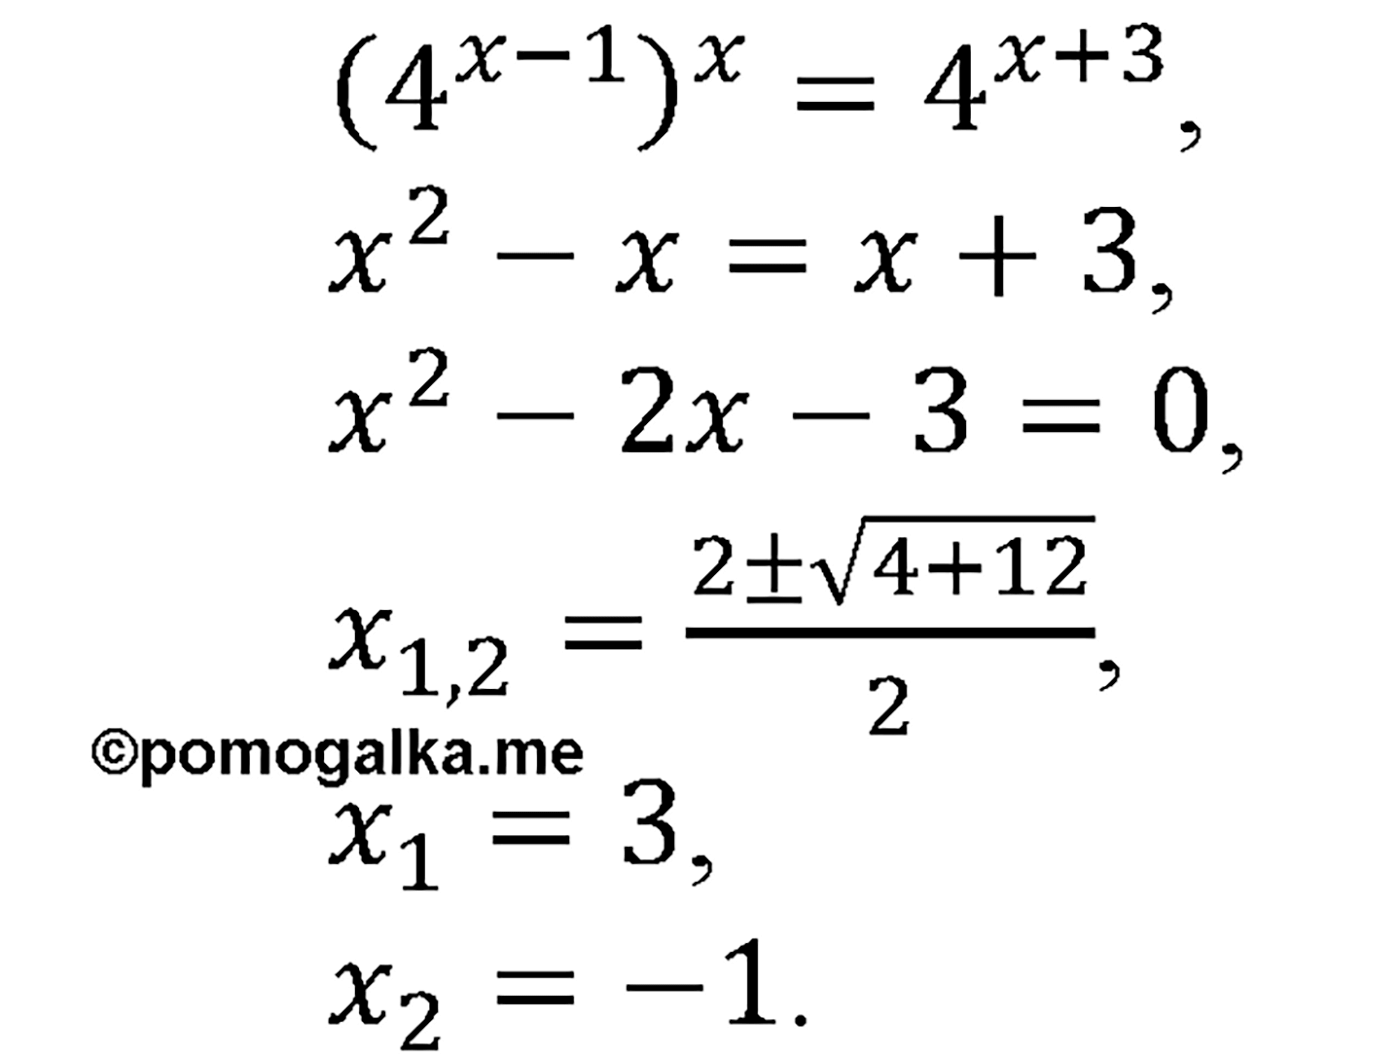 разбор задачи №1343 по алгебре за 10-11 класс из учебника Алимова, Колягина